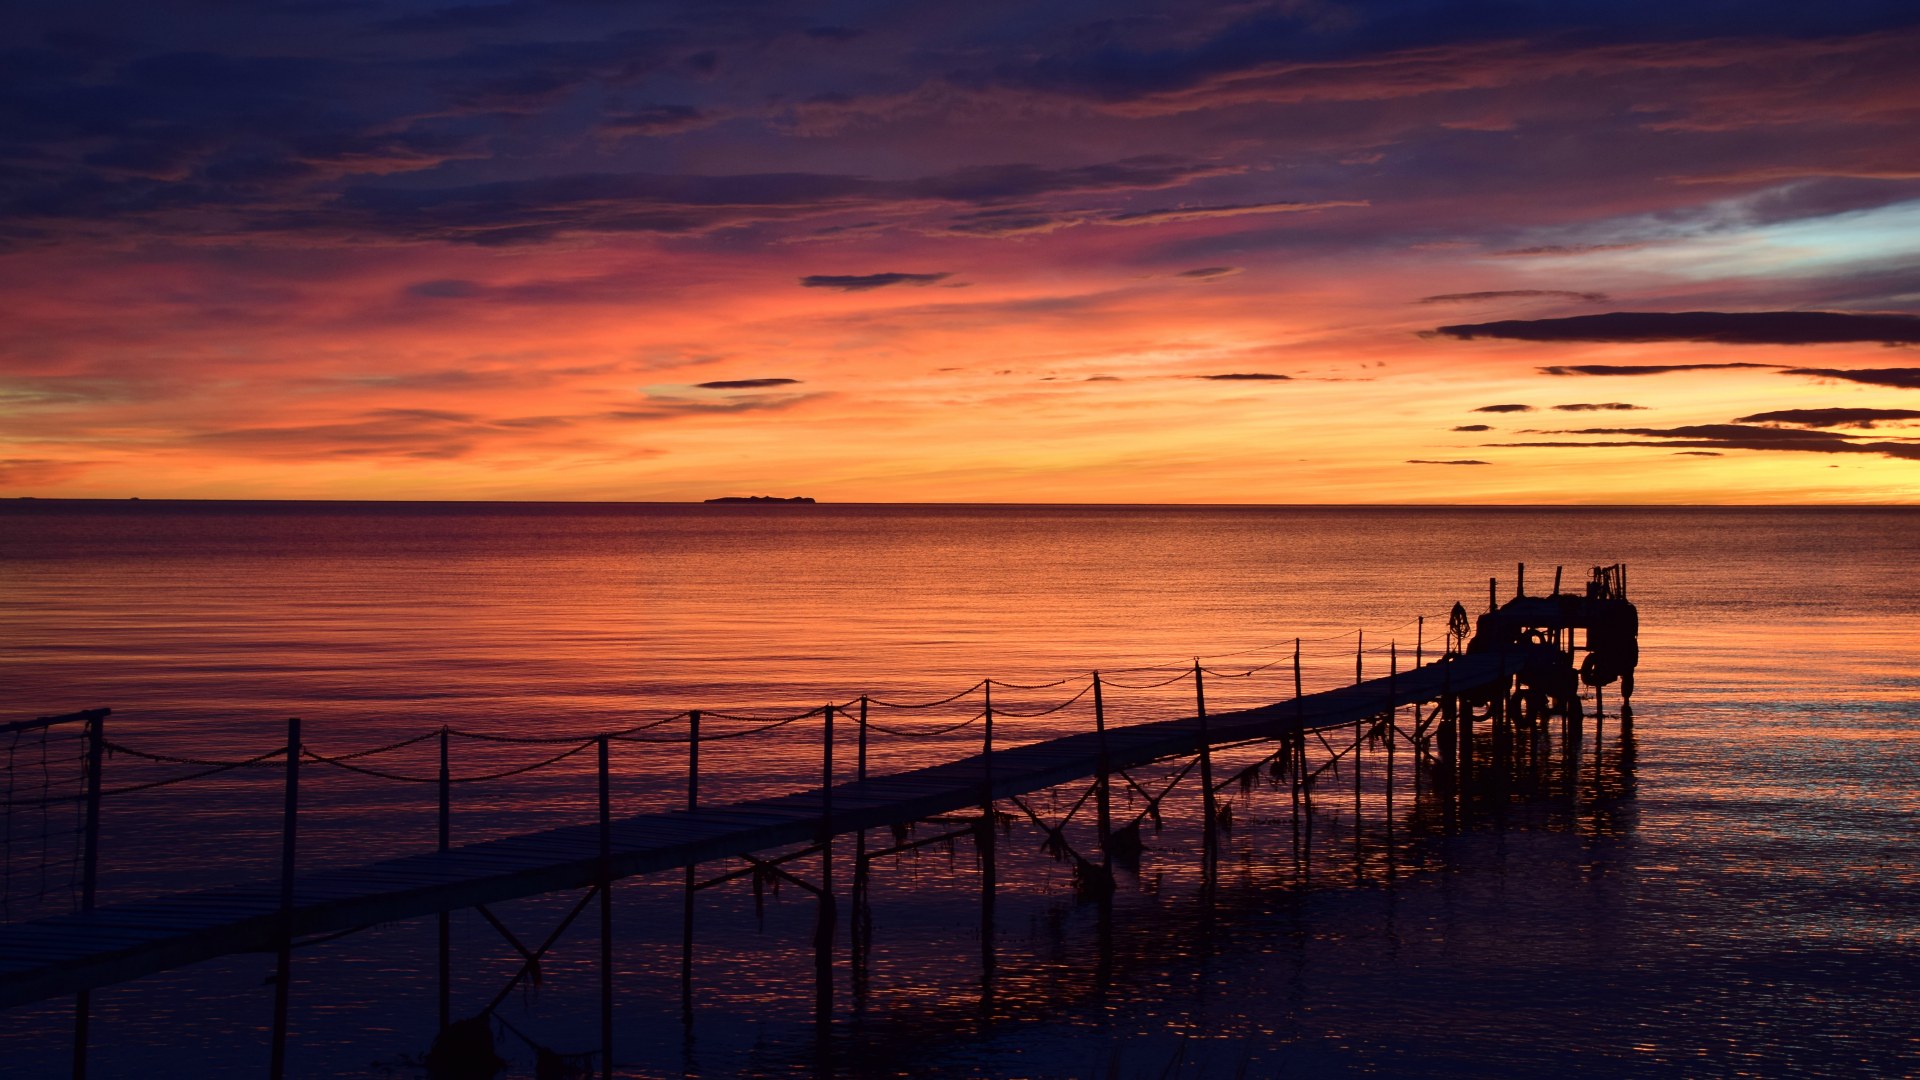 Sunrise, Strait of Magellan near Punta Arenas